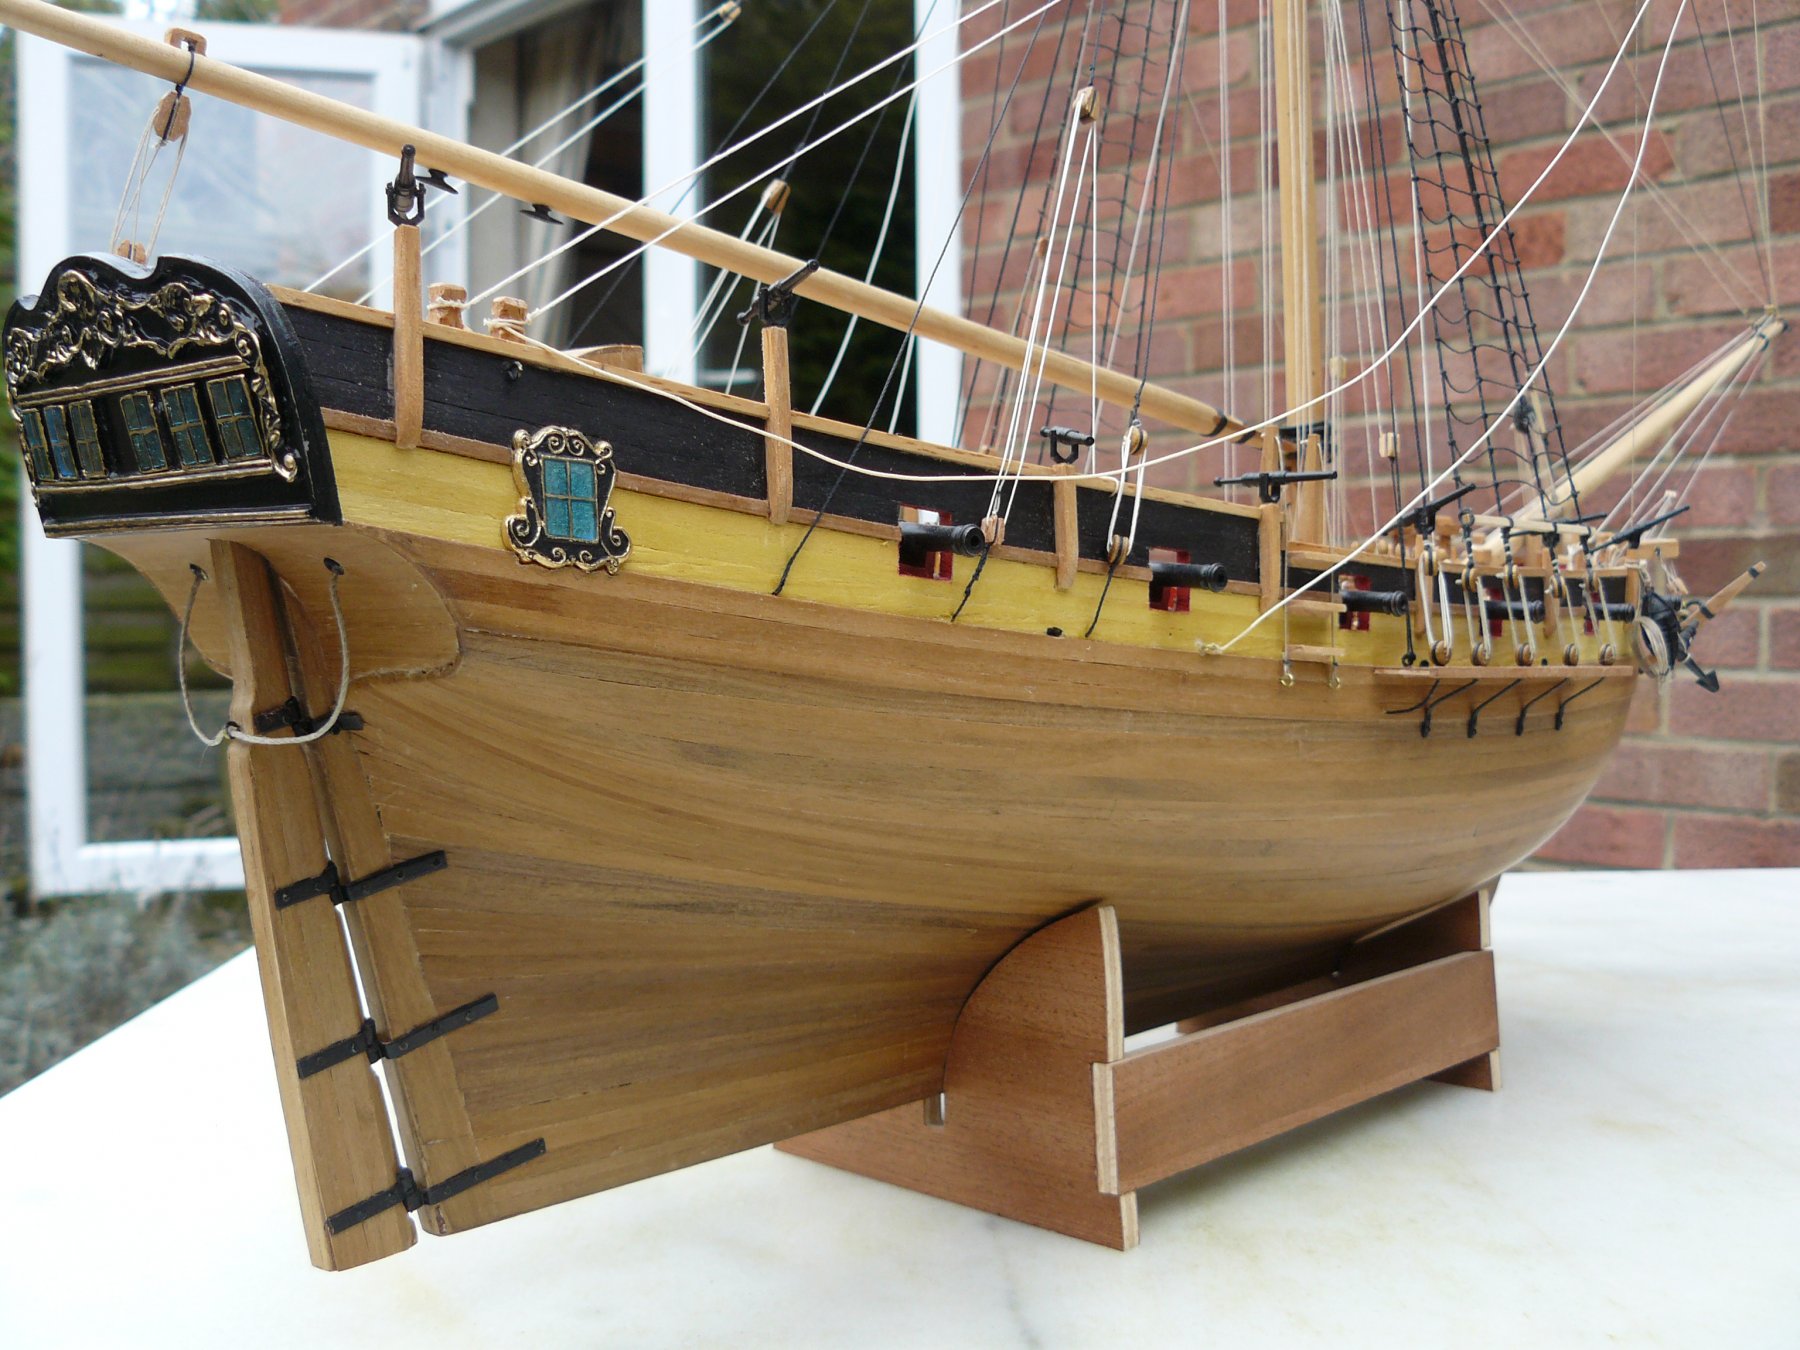 Maquette de bateau HMS Resolution Cutter - Corel (SM38)